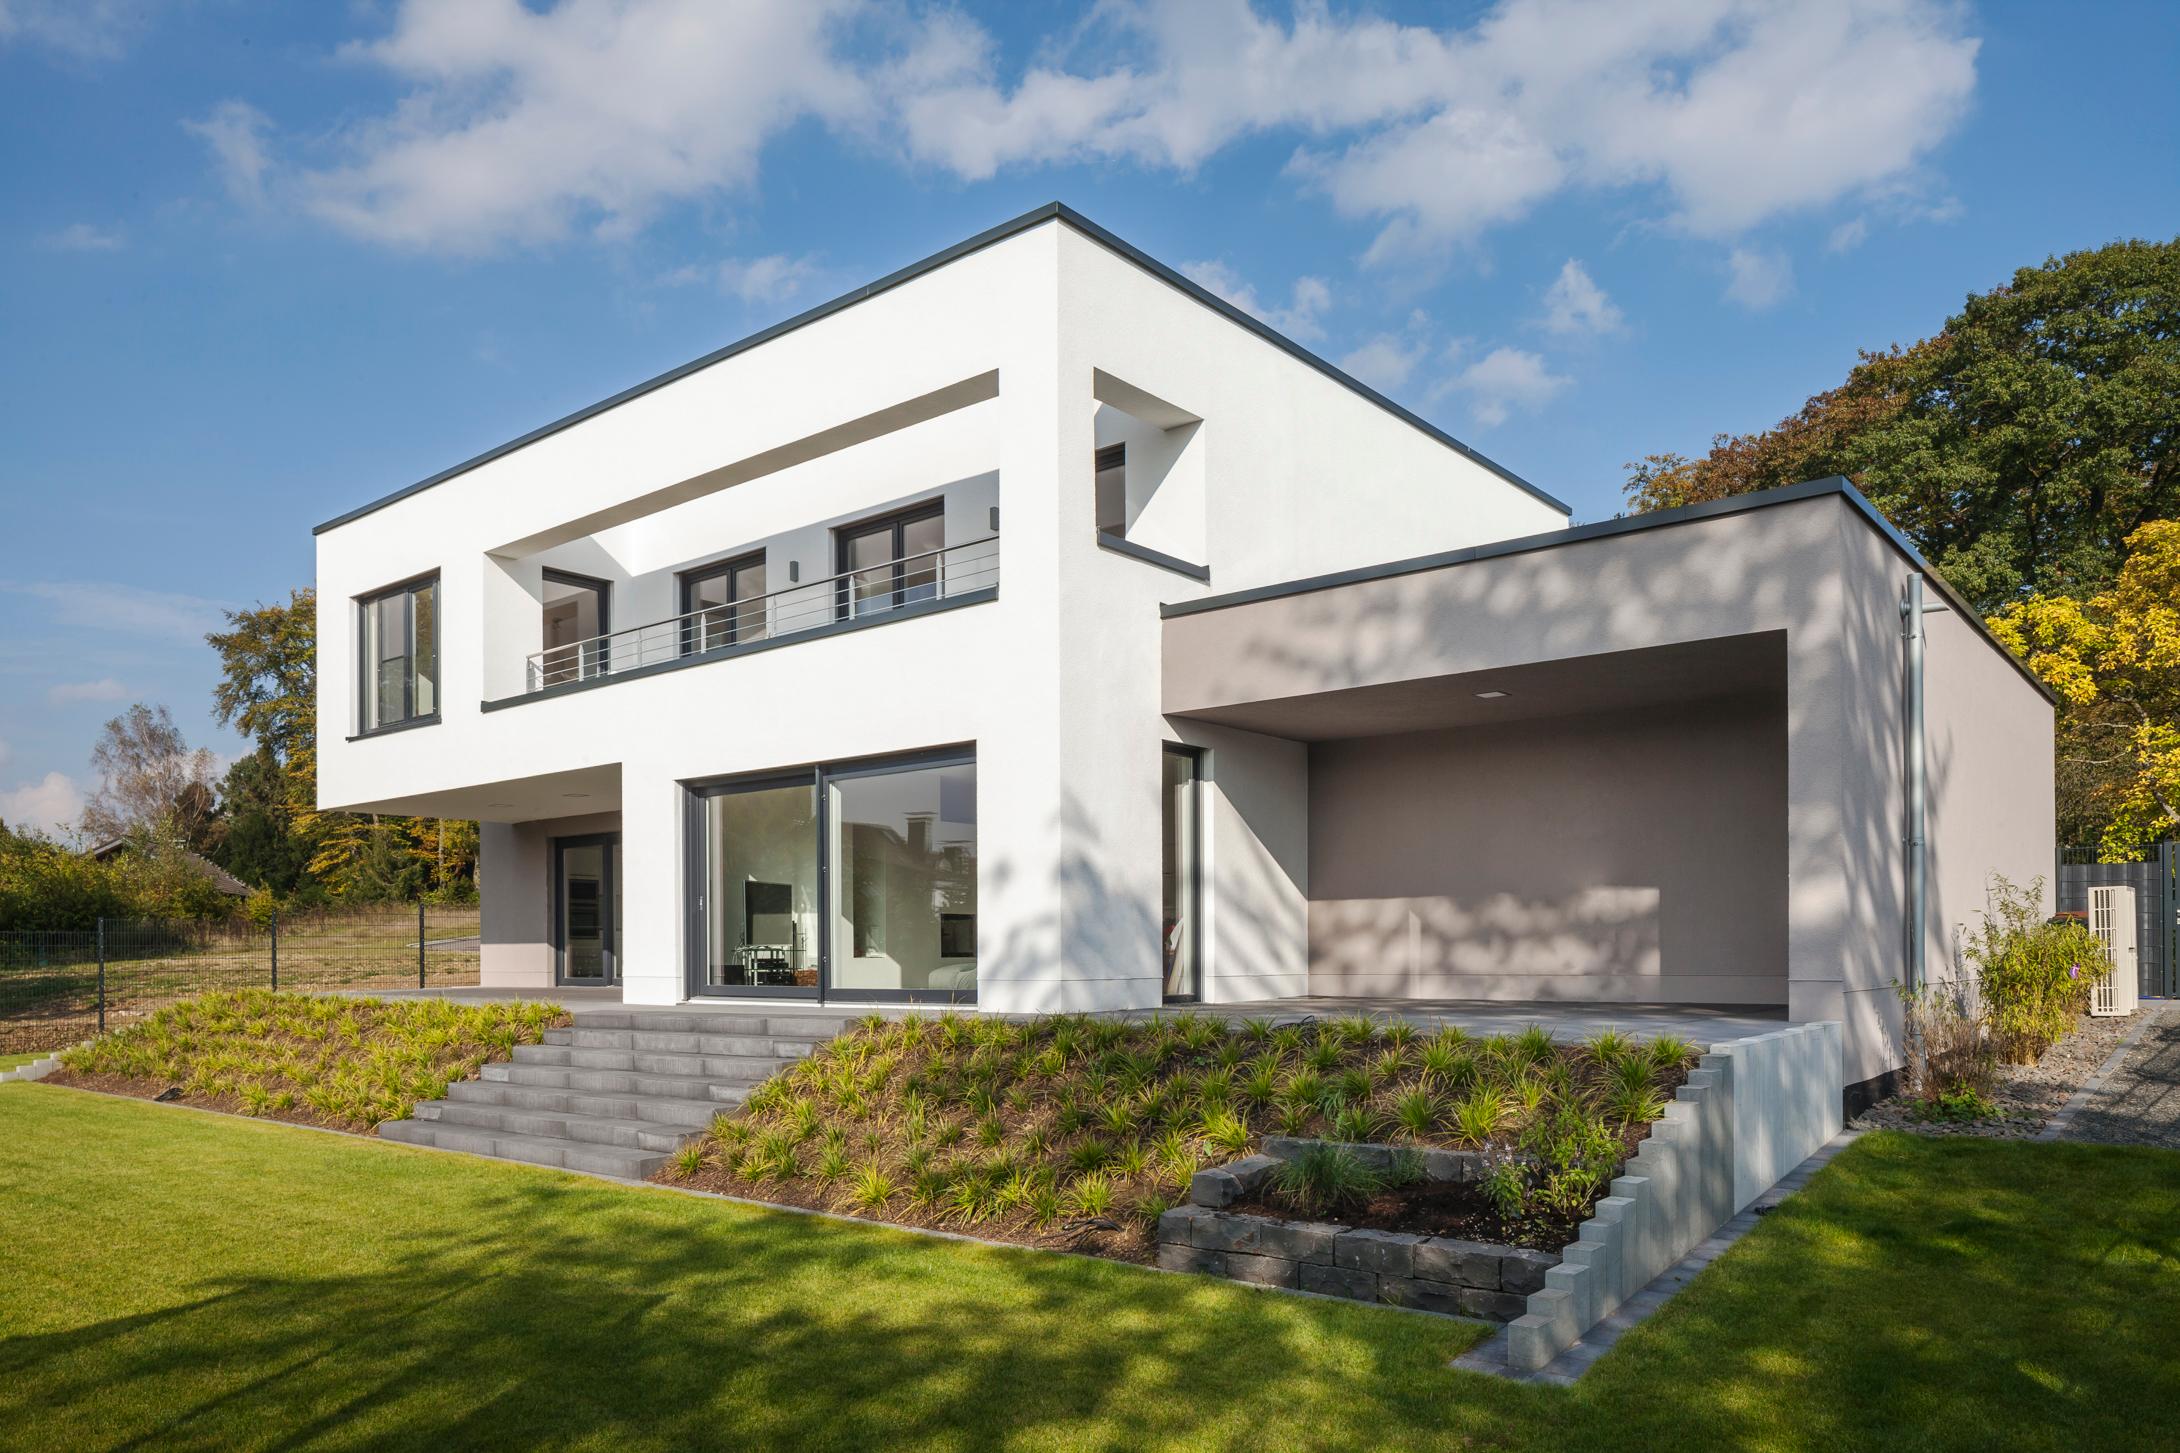 Gartenansicht #bauhausstil #terrasse #minimalistisch #eingang #flachdach #garage #innenarchitektur ©Constantin Meyer Photographie